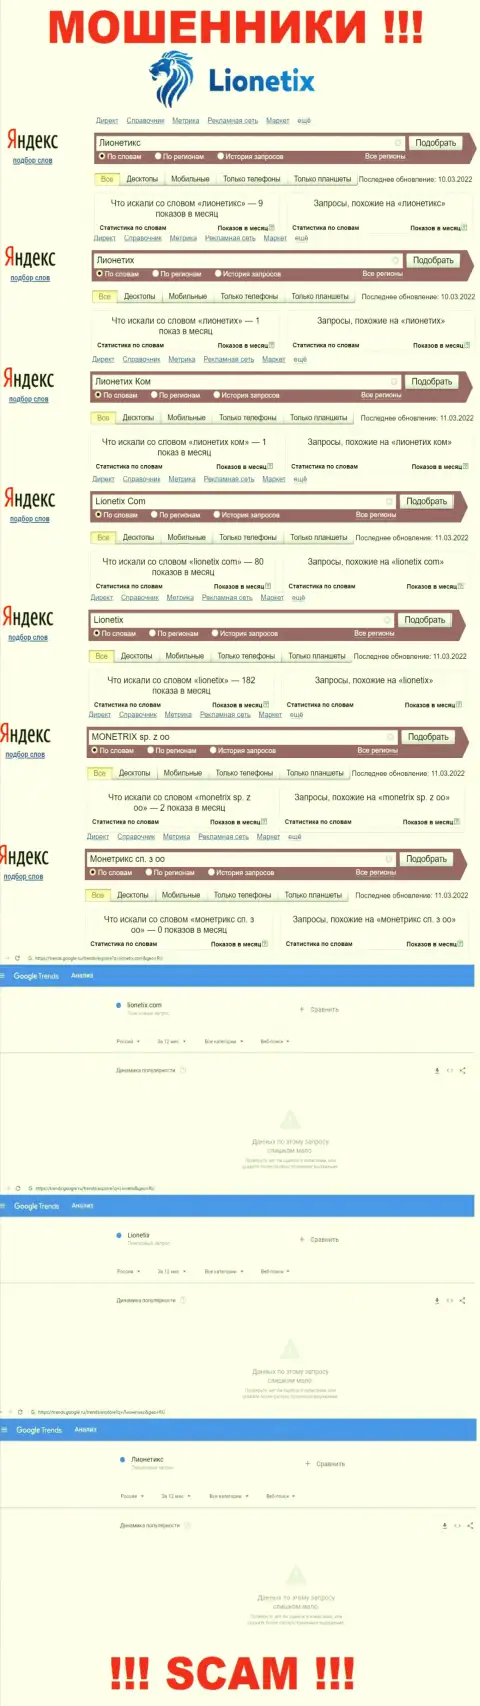 Именно такое количество поисковых запросов в глобальной сети по кидалам Лионетикс